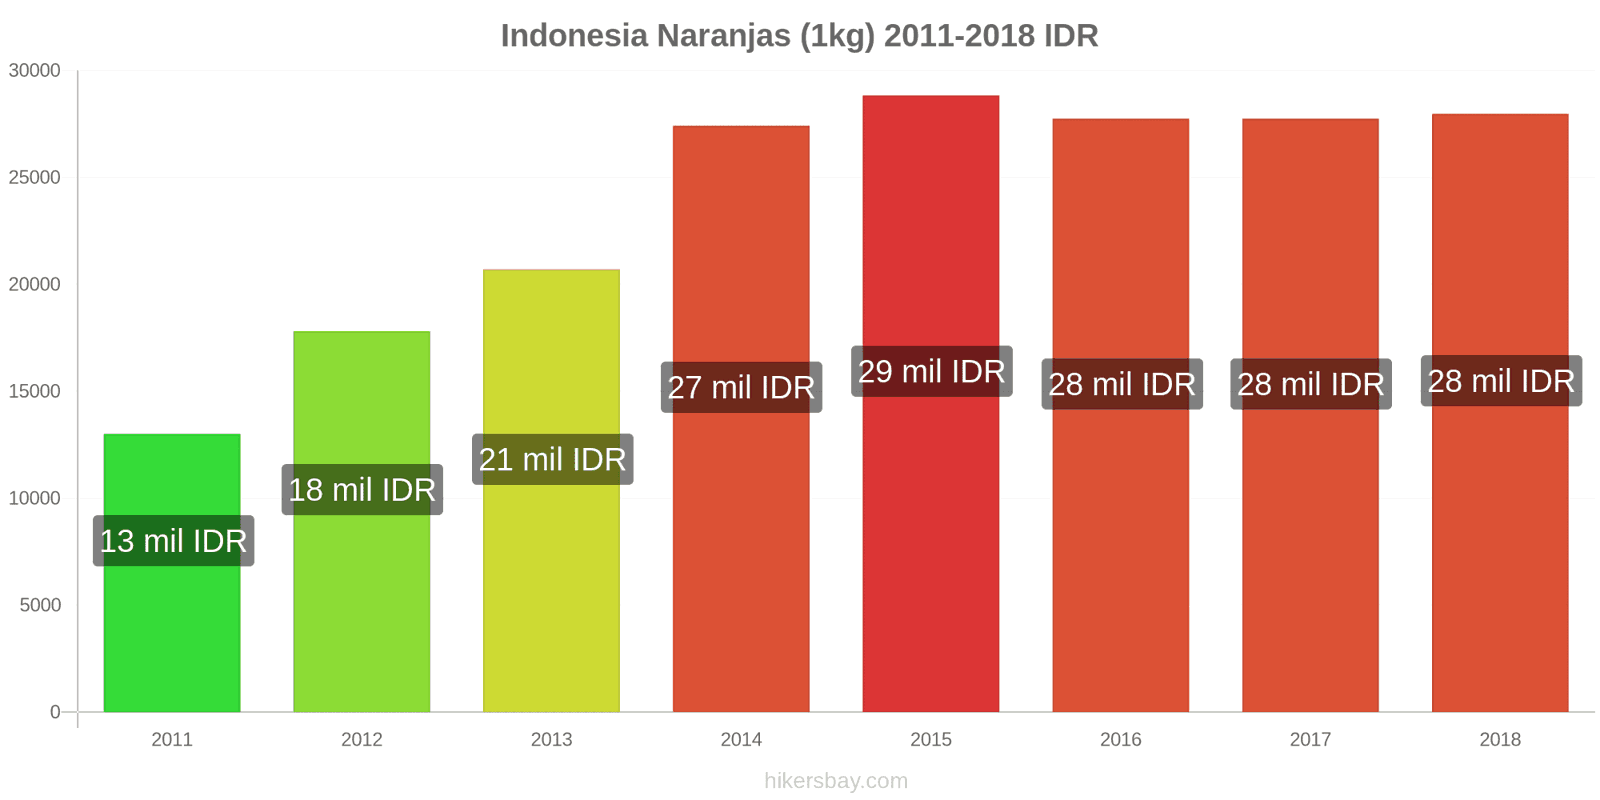 Indonesia cambios de precios Naranjas (1kg) hikersbay.com